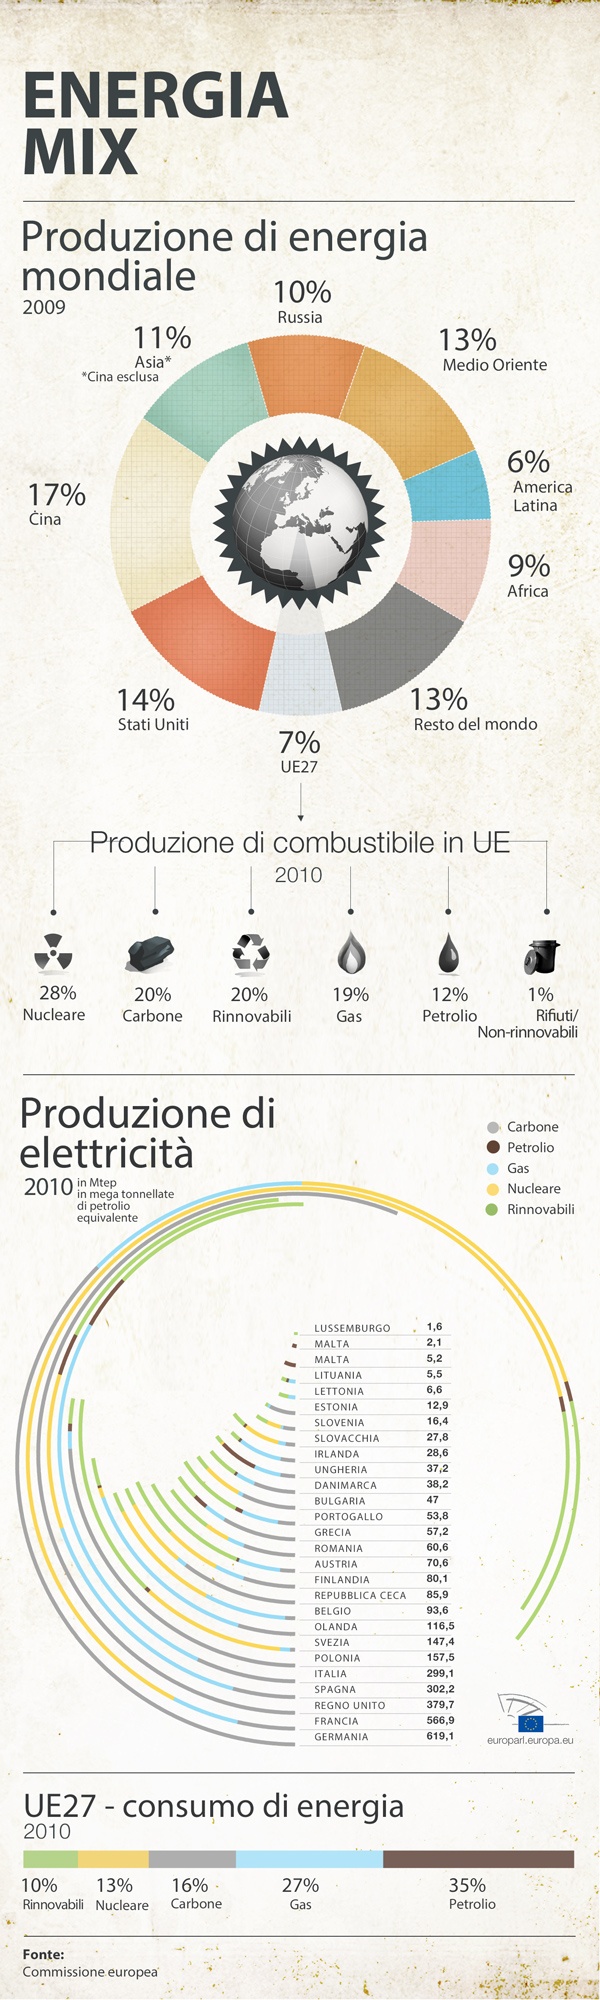 Il mix energetico dell'Unione Europea in infografica